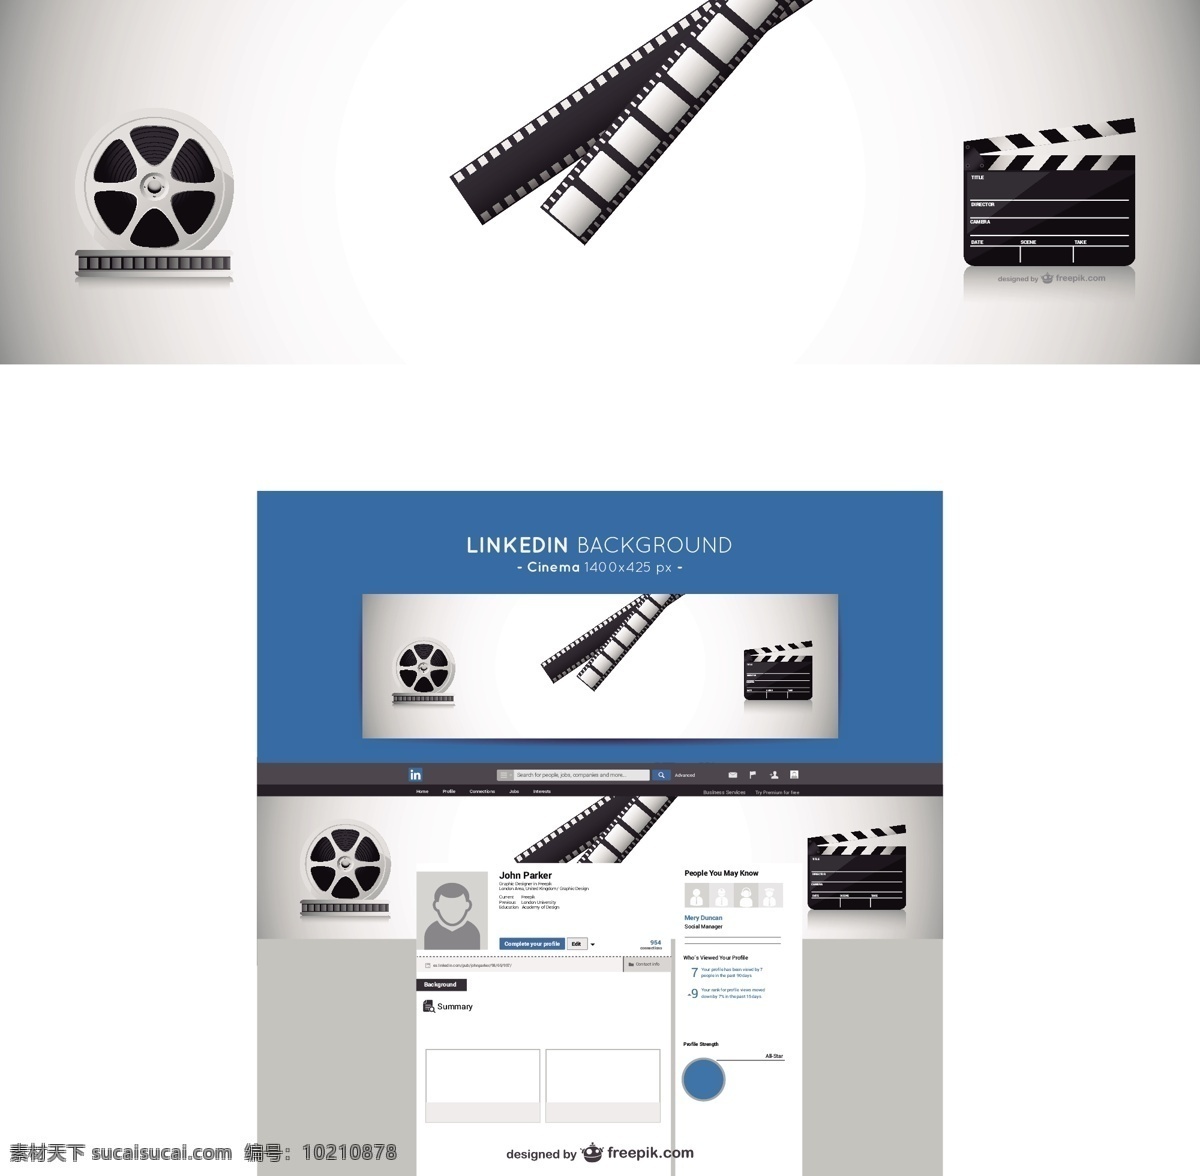 linkedin 电影 背景 社会媒体 社会 媒体 模板 垂直 白色